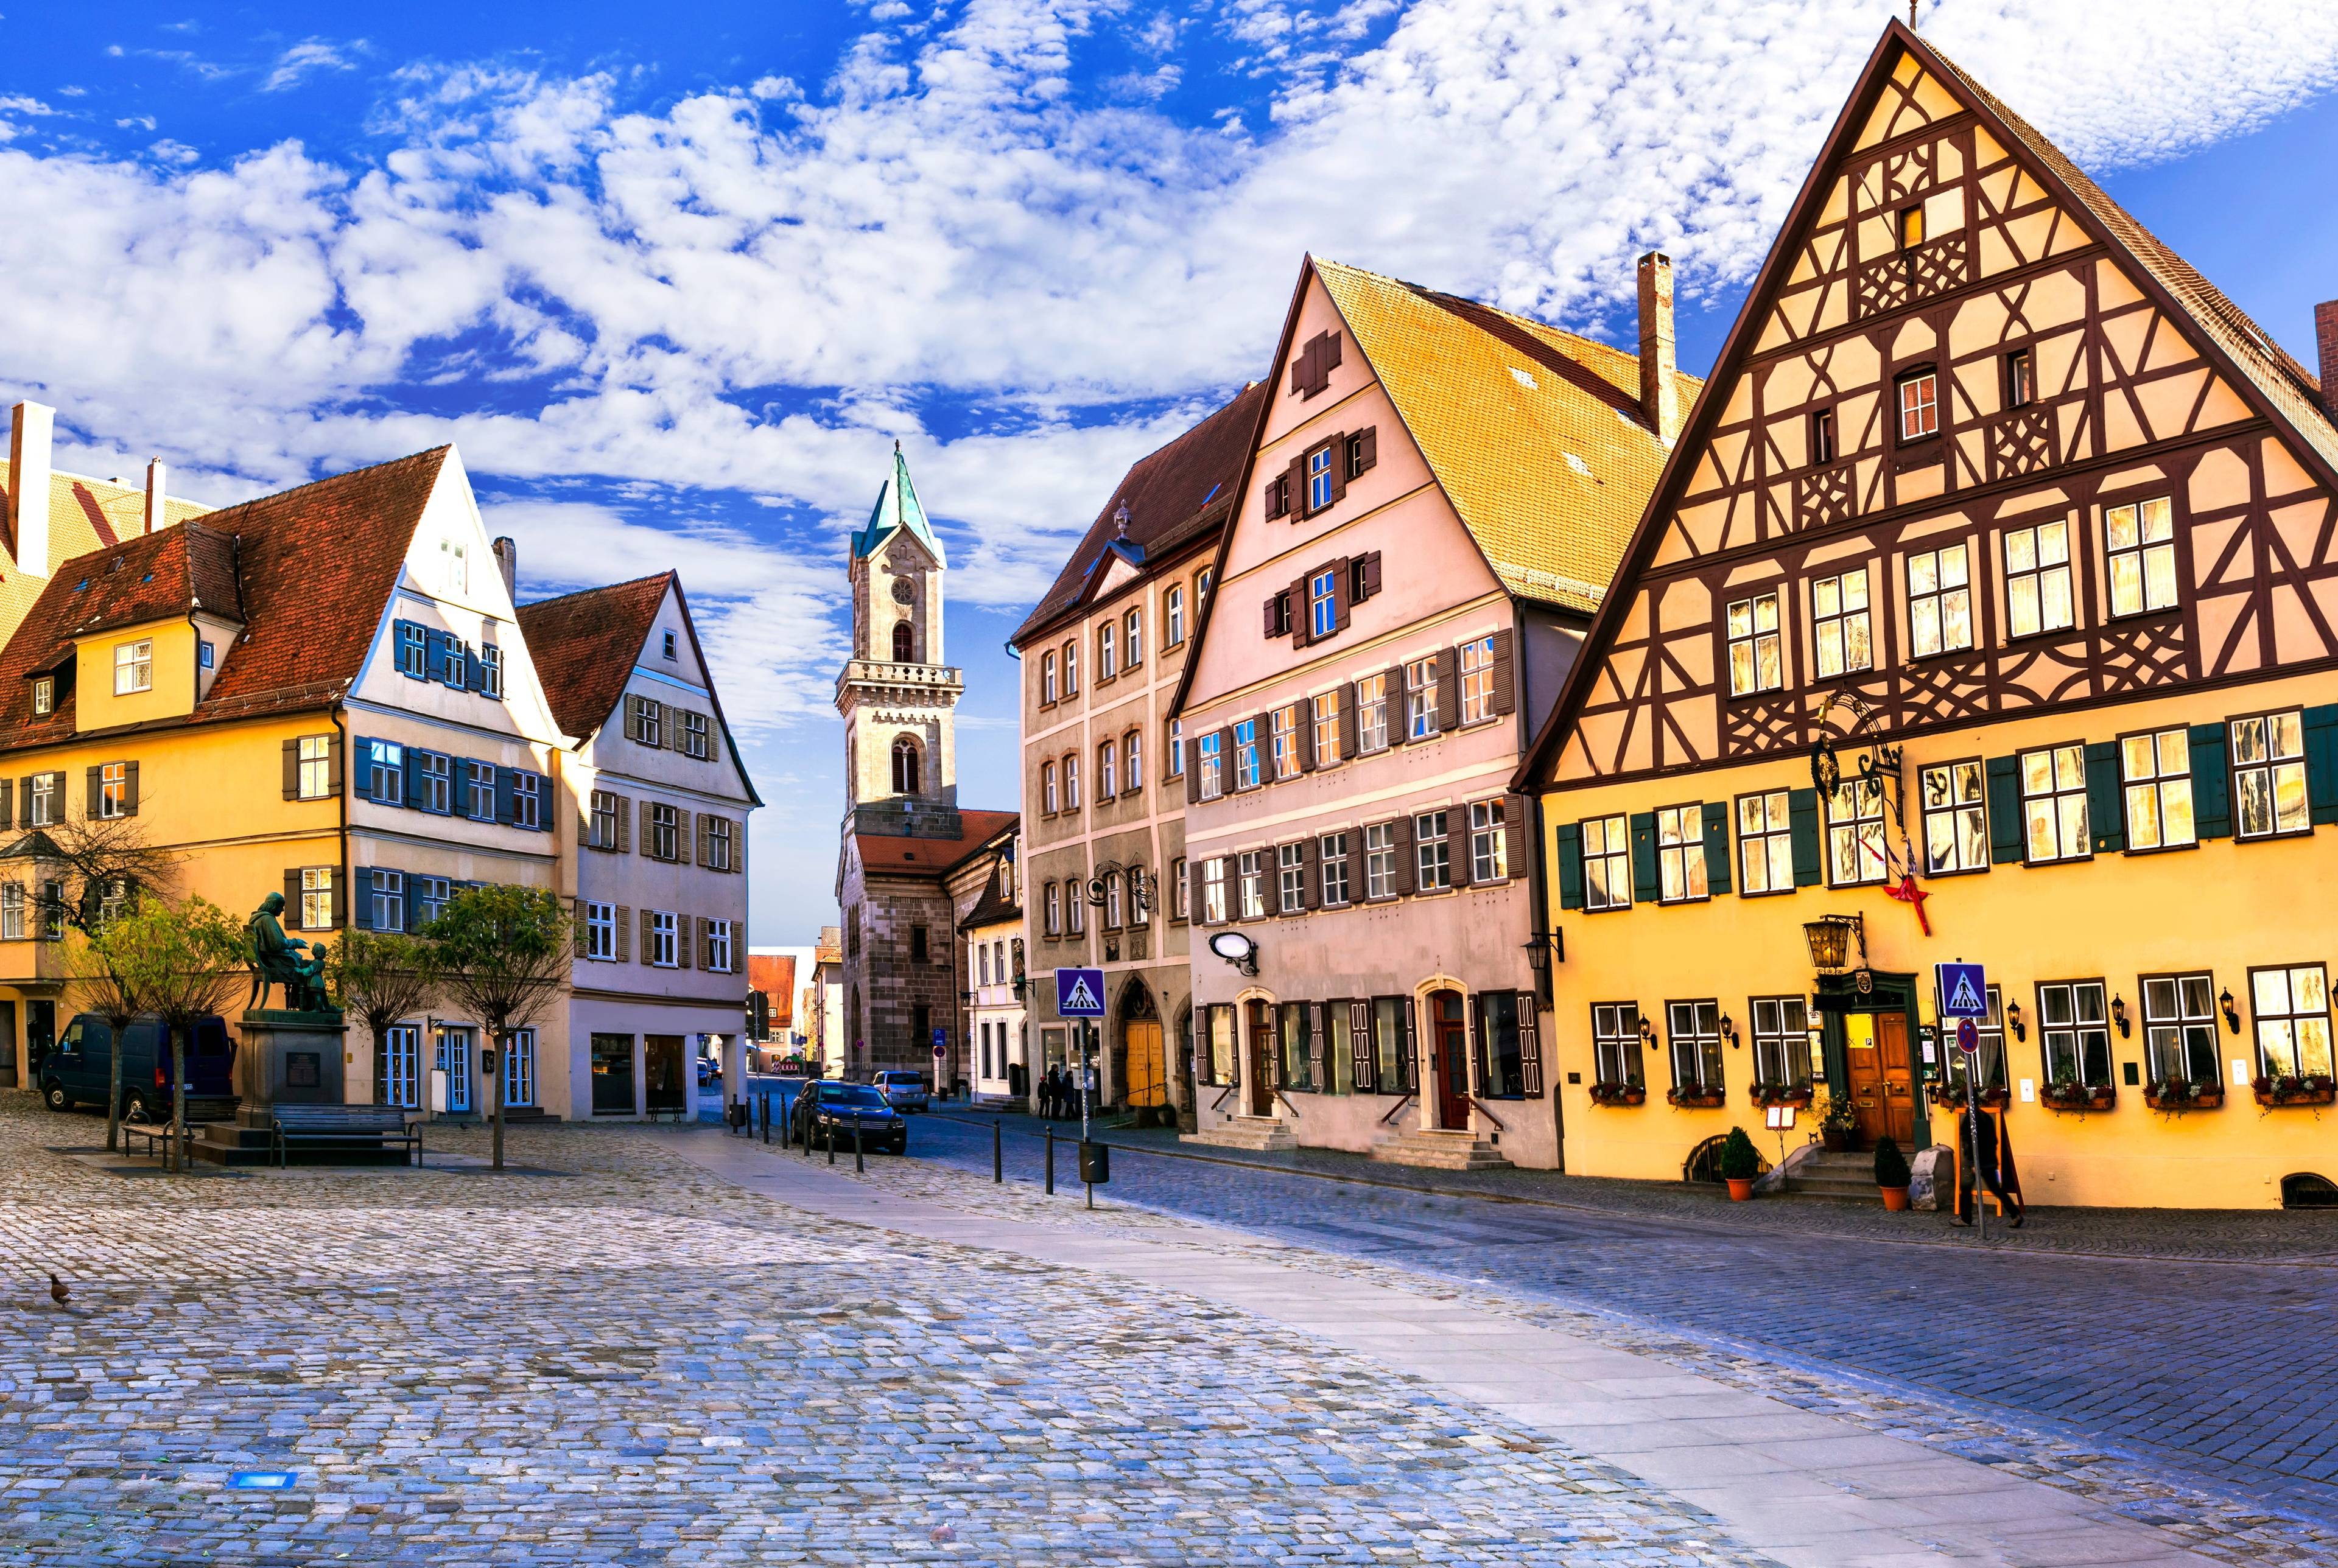 Munich - Nuremberg : Tomber amoureux de la route romantique